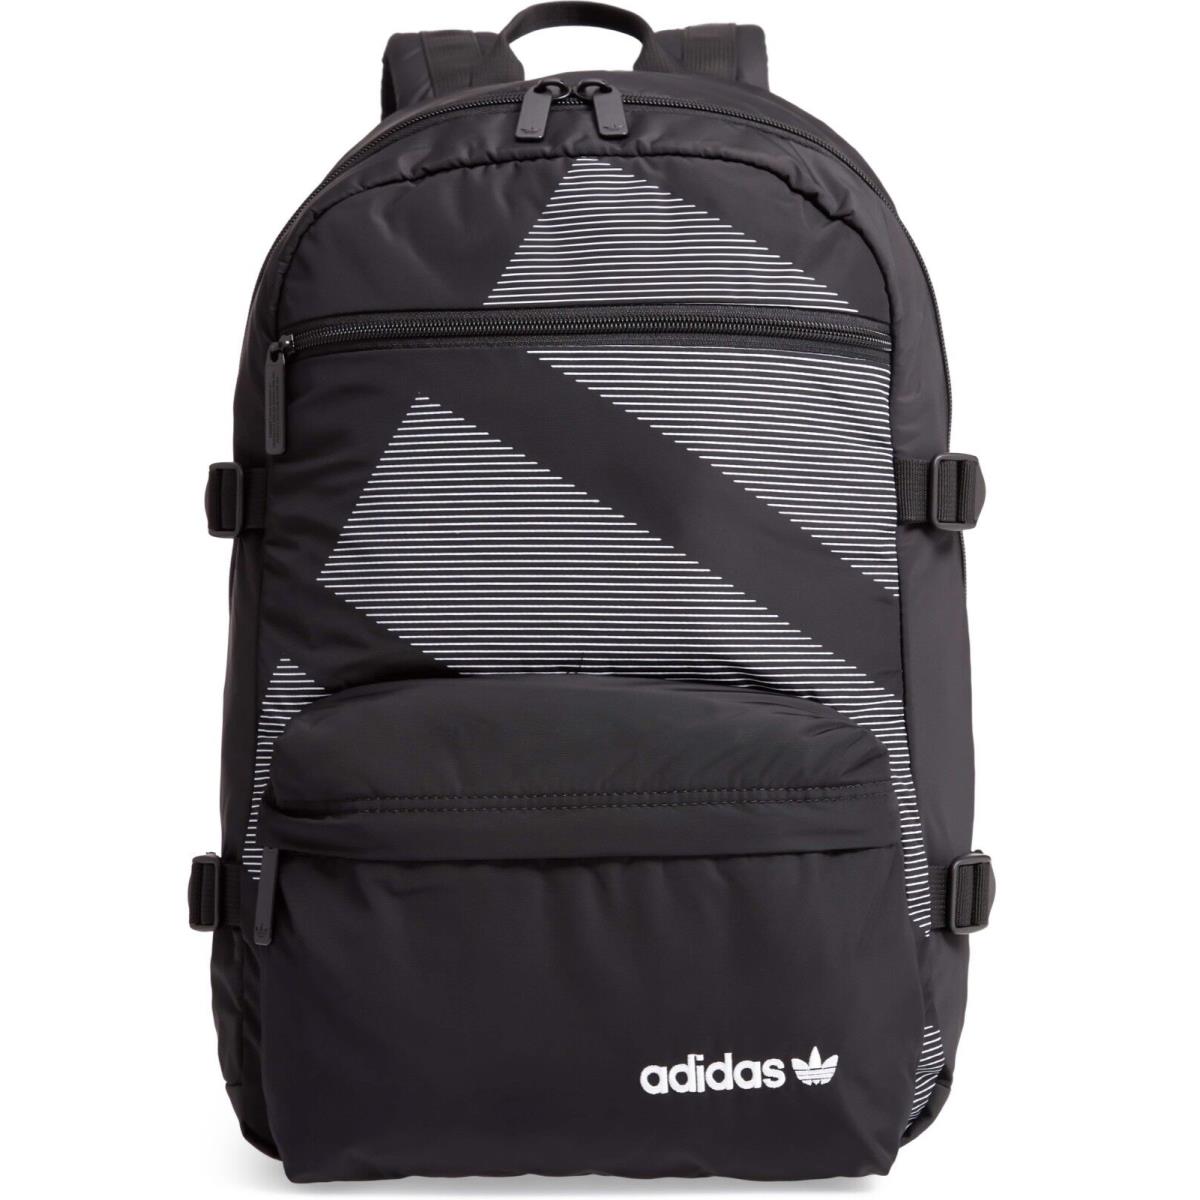 Adidas Originals Eqt Backpack Black